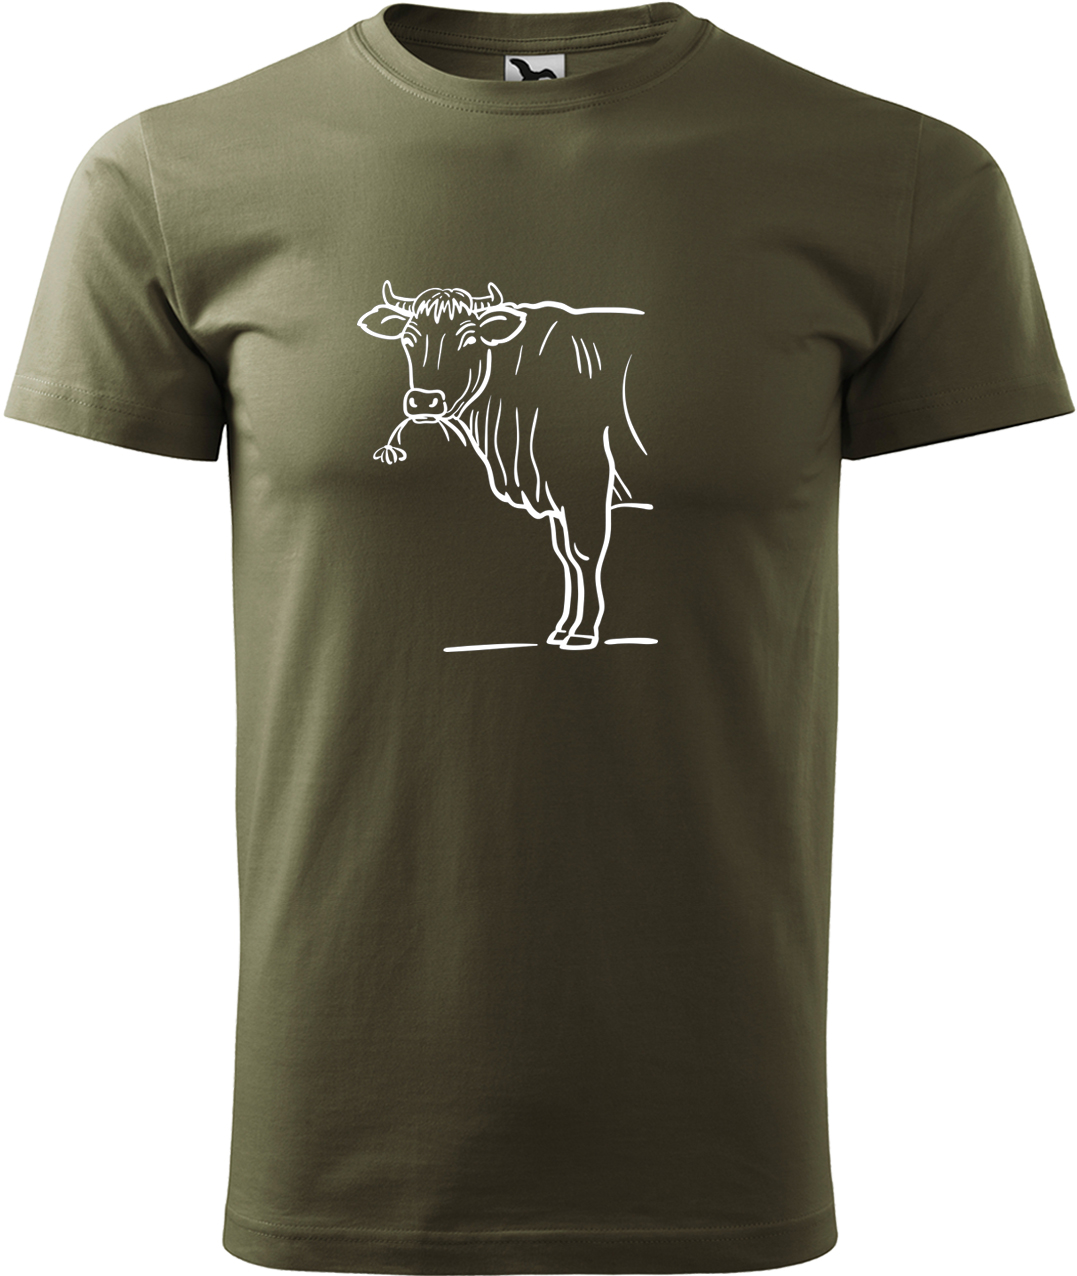 Pánské tričko s krávou - Býk Velikost: L, Barva: Military (69), Střih: pánský